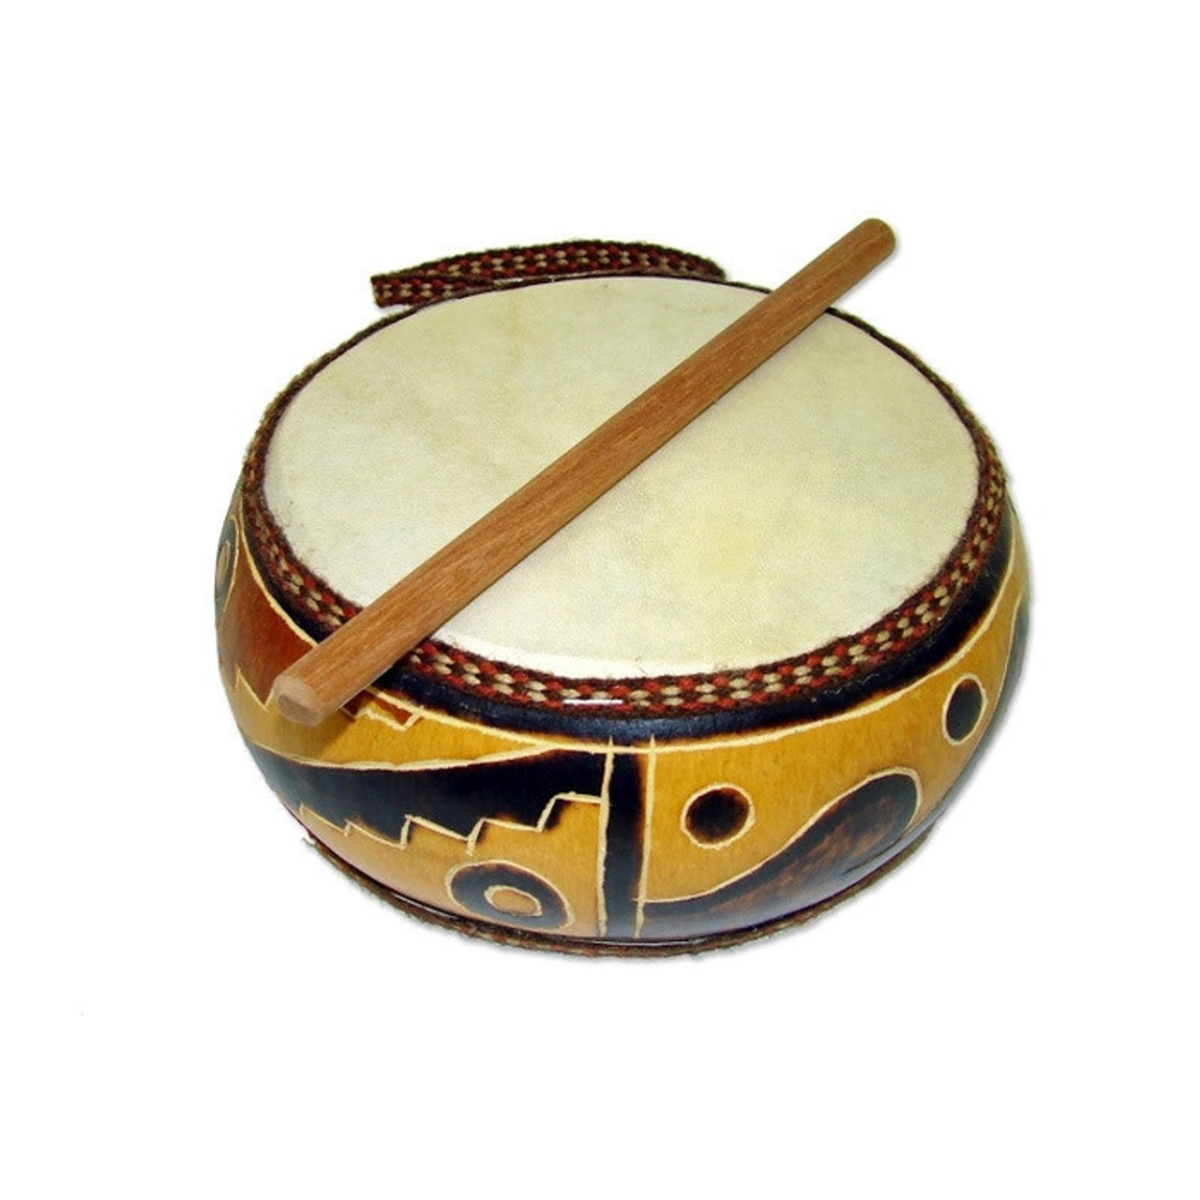 Барабан музыкальный инструмент